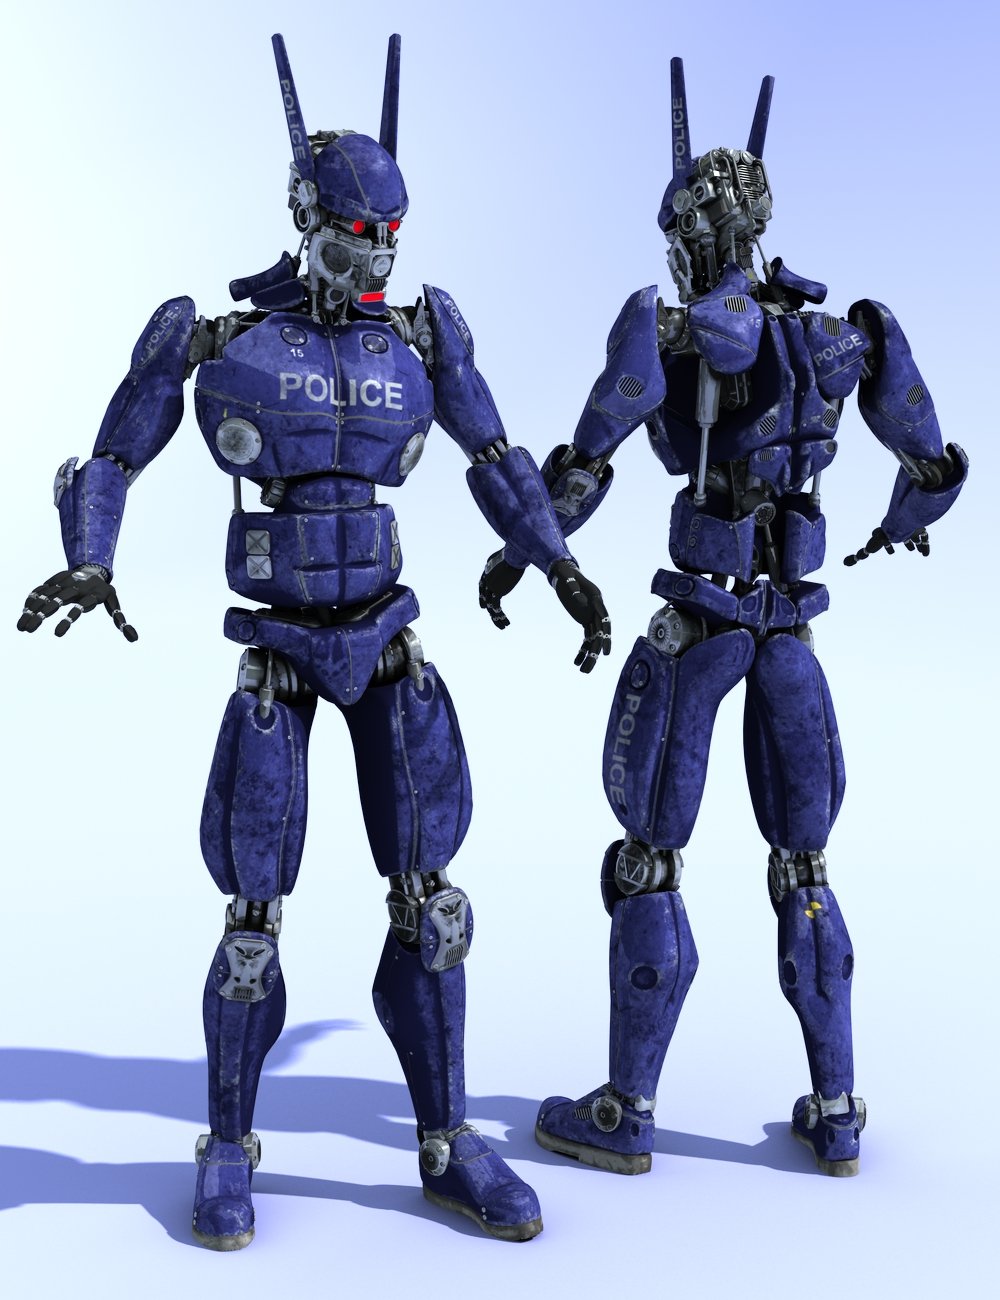 WeaponMech by: DzFire, 3D Models by Daz 3D